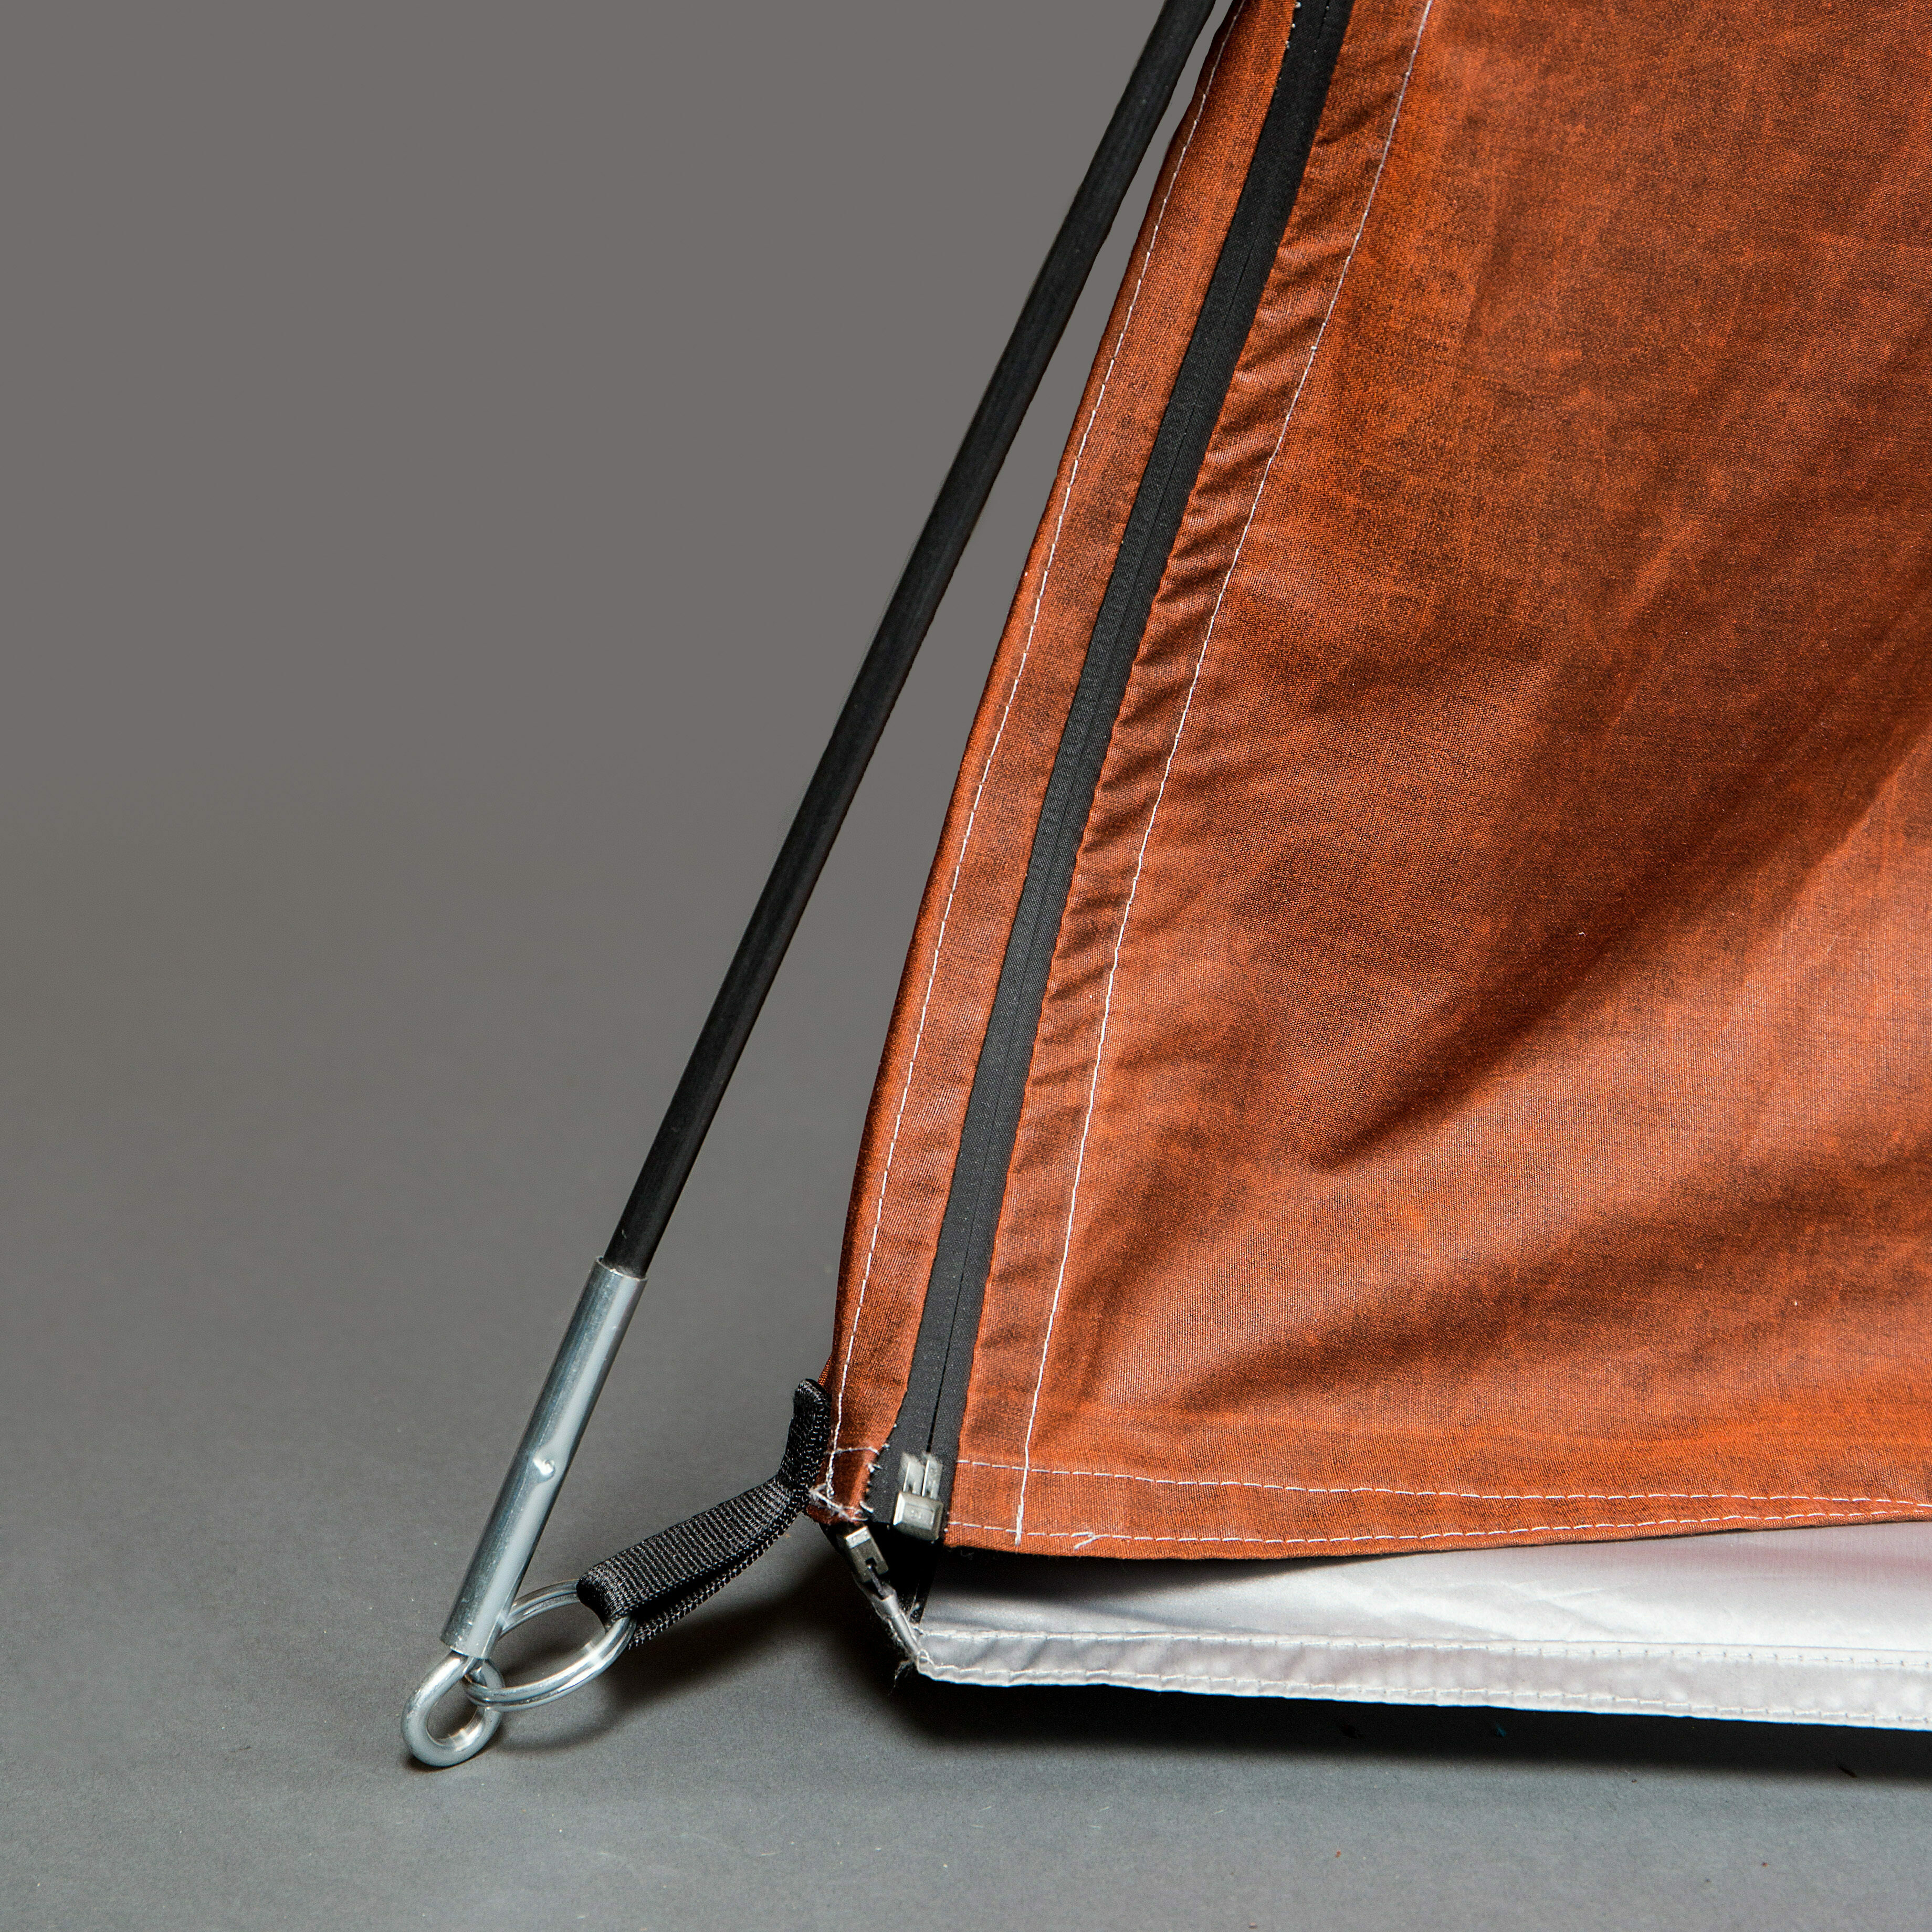 backpack and tent jacket adiff funktionale bekleidung jacke zelt schlafsack rettungsweste design